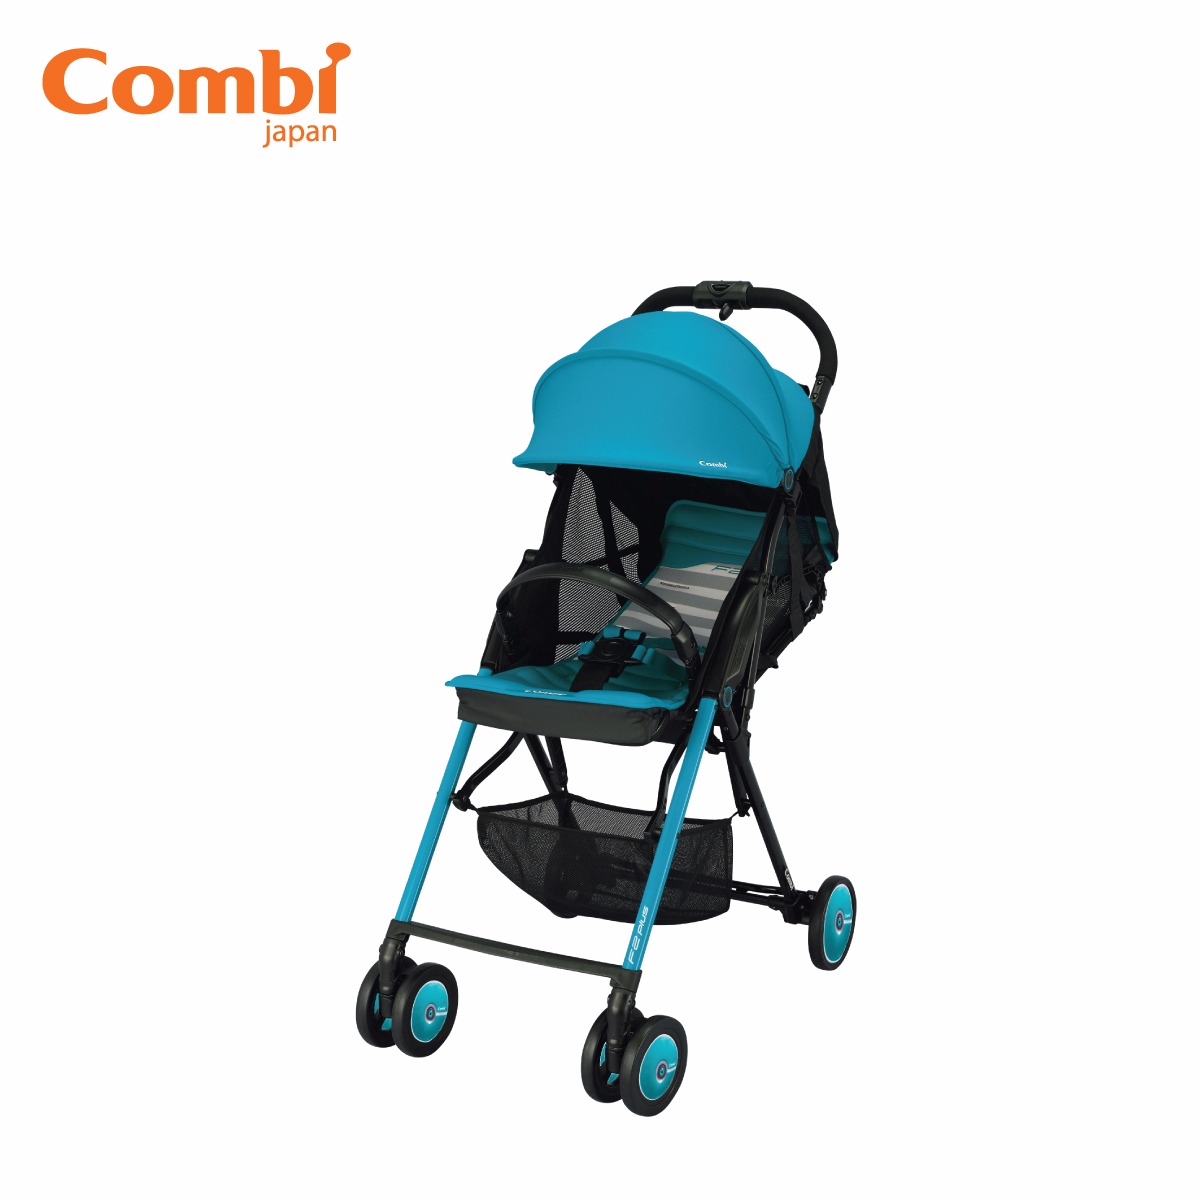 Chuyên phân phối, cung cấp sản phẩm xe đẩy trẻ em Combi nội địa nhật